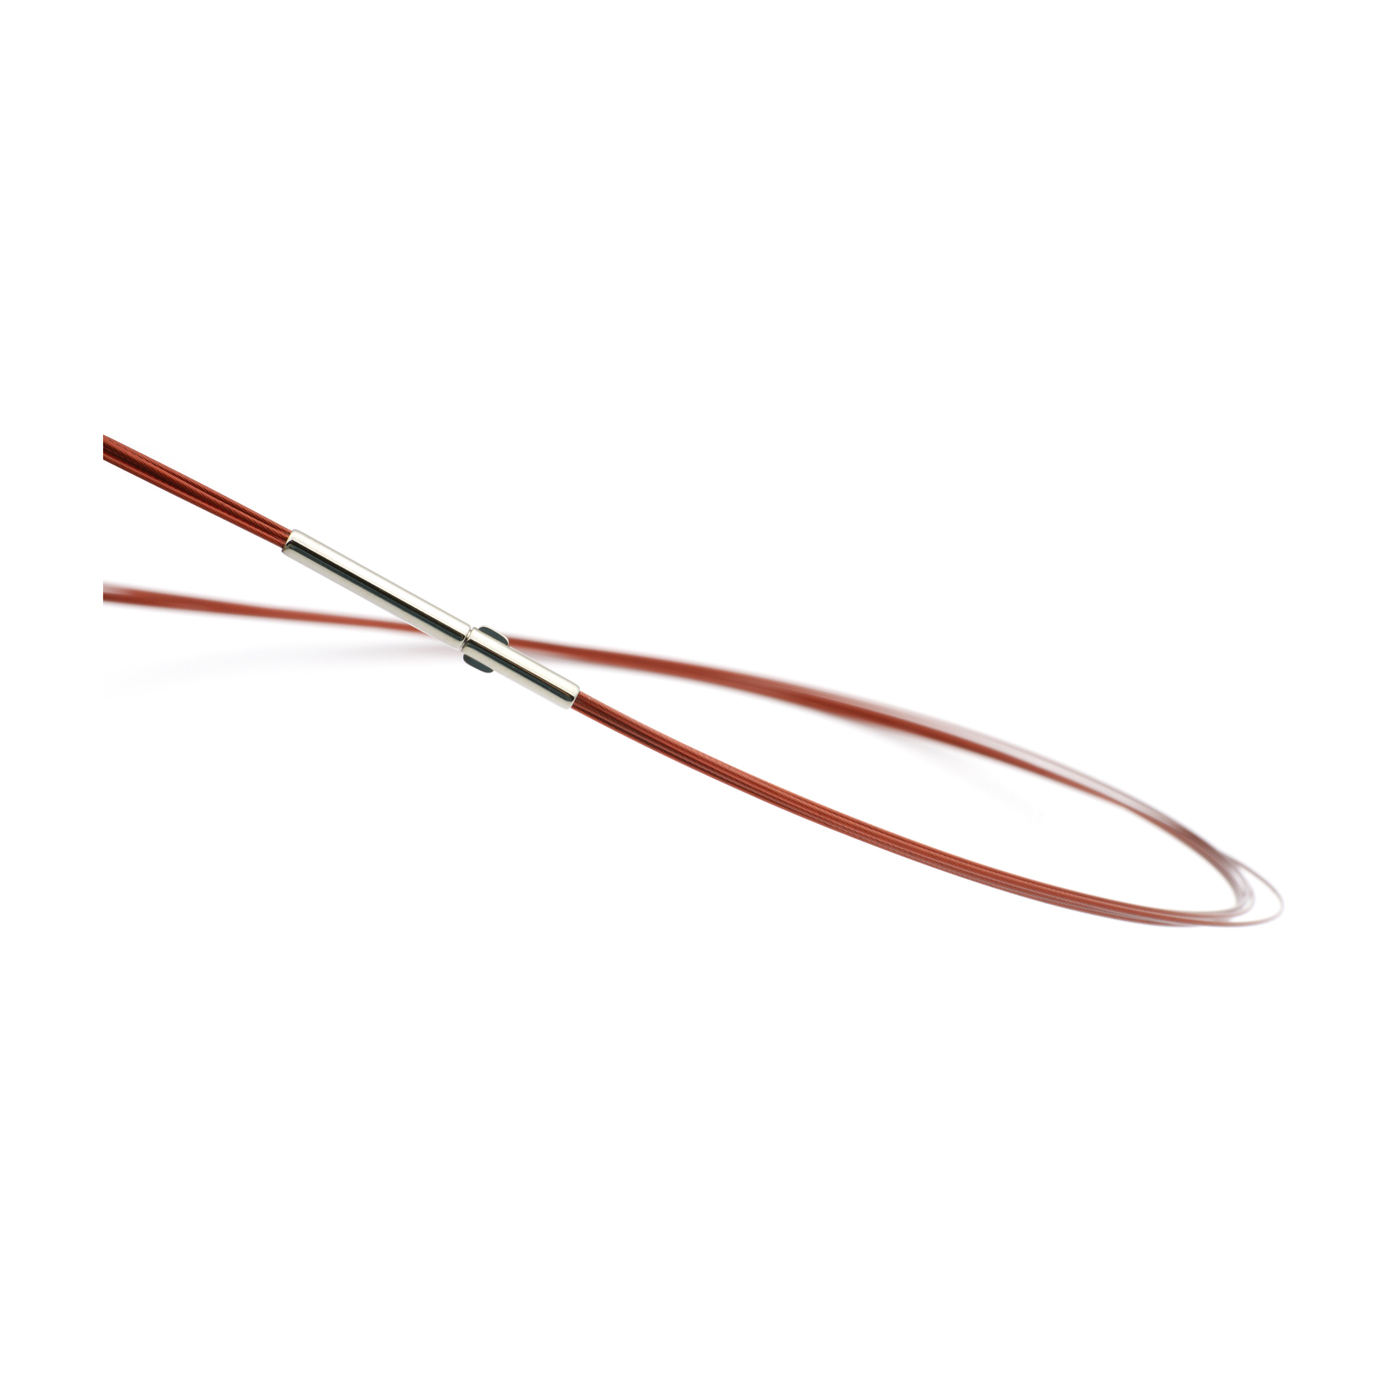 Seilcollier "Colour Cable", ES, rot, 5-reihig, 45 cm - 1 Stück